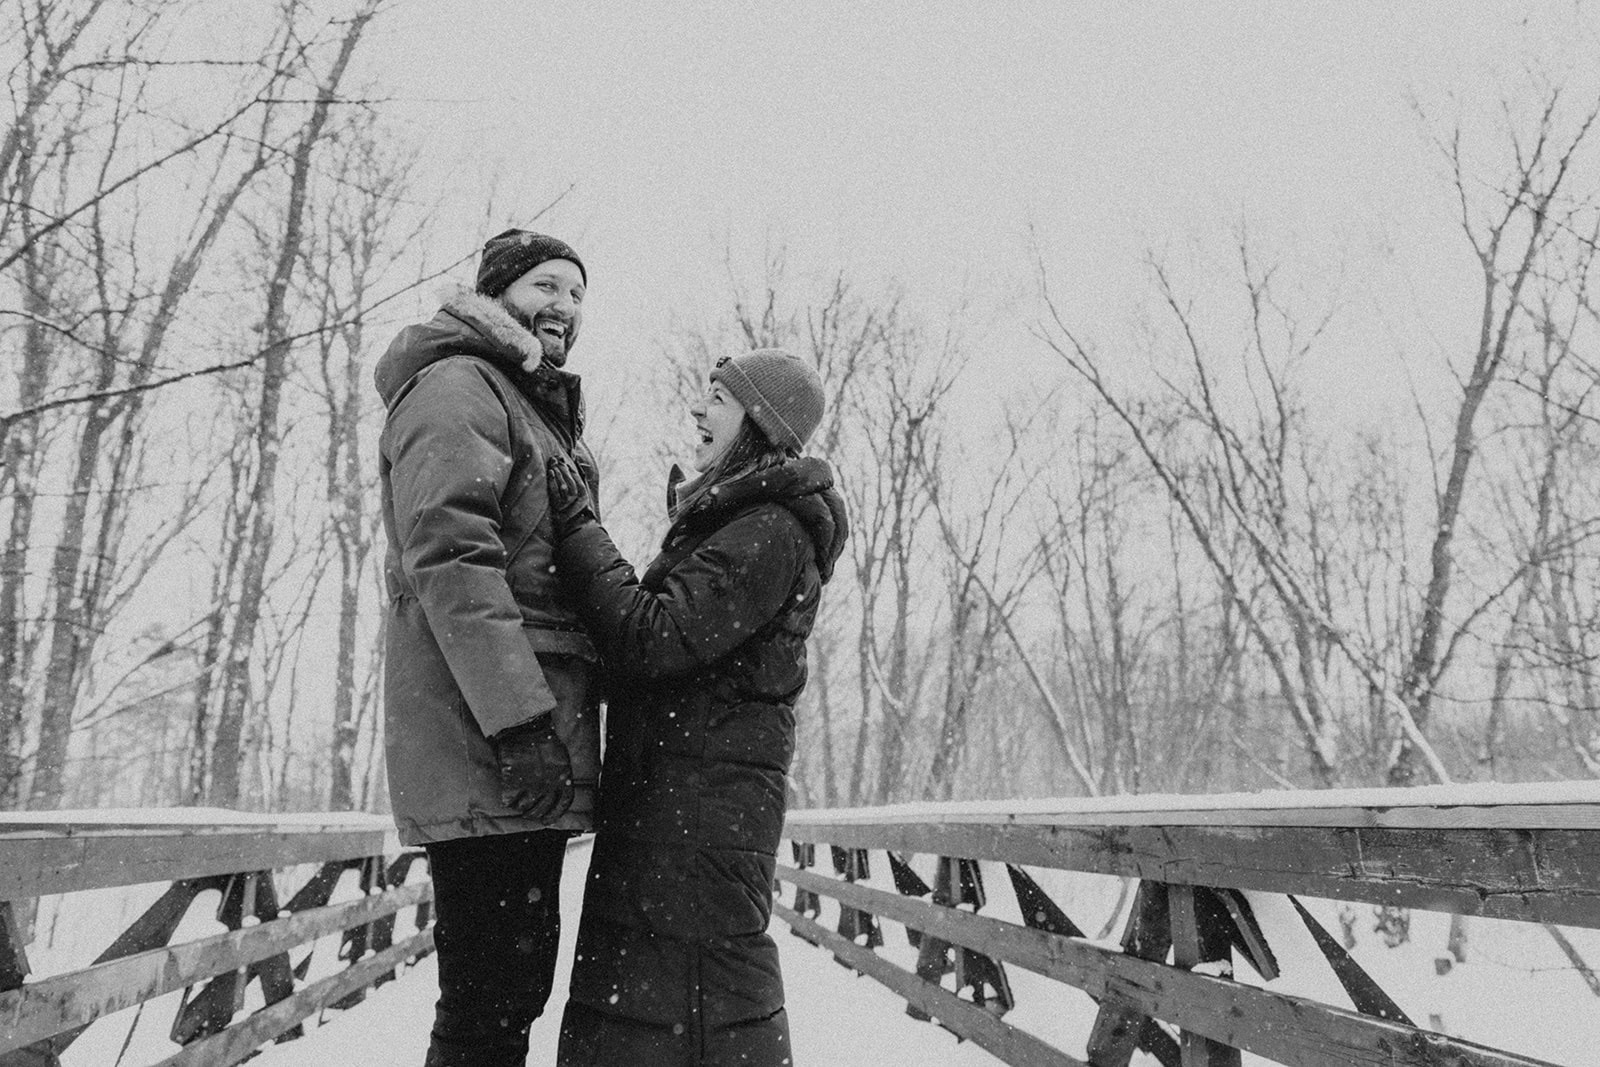 couple standing on snowy bridge